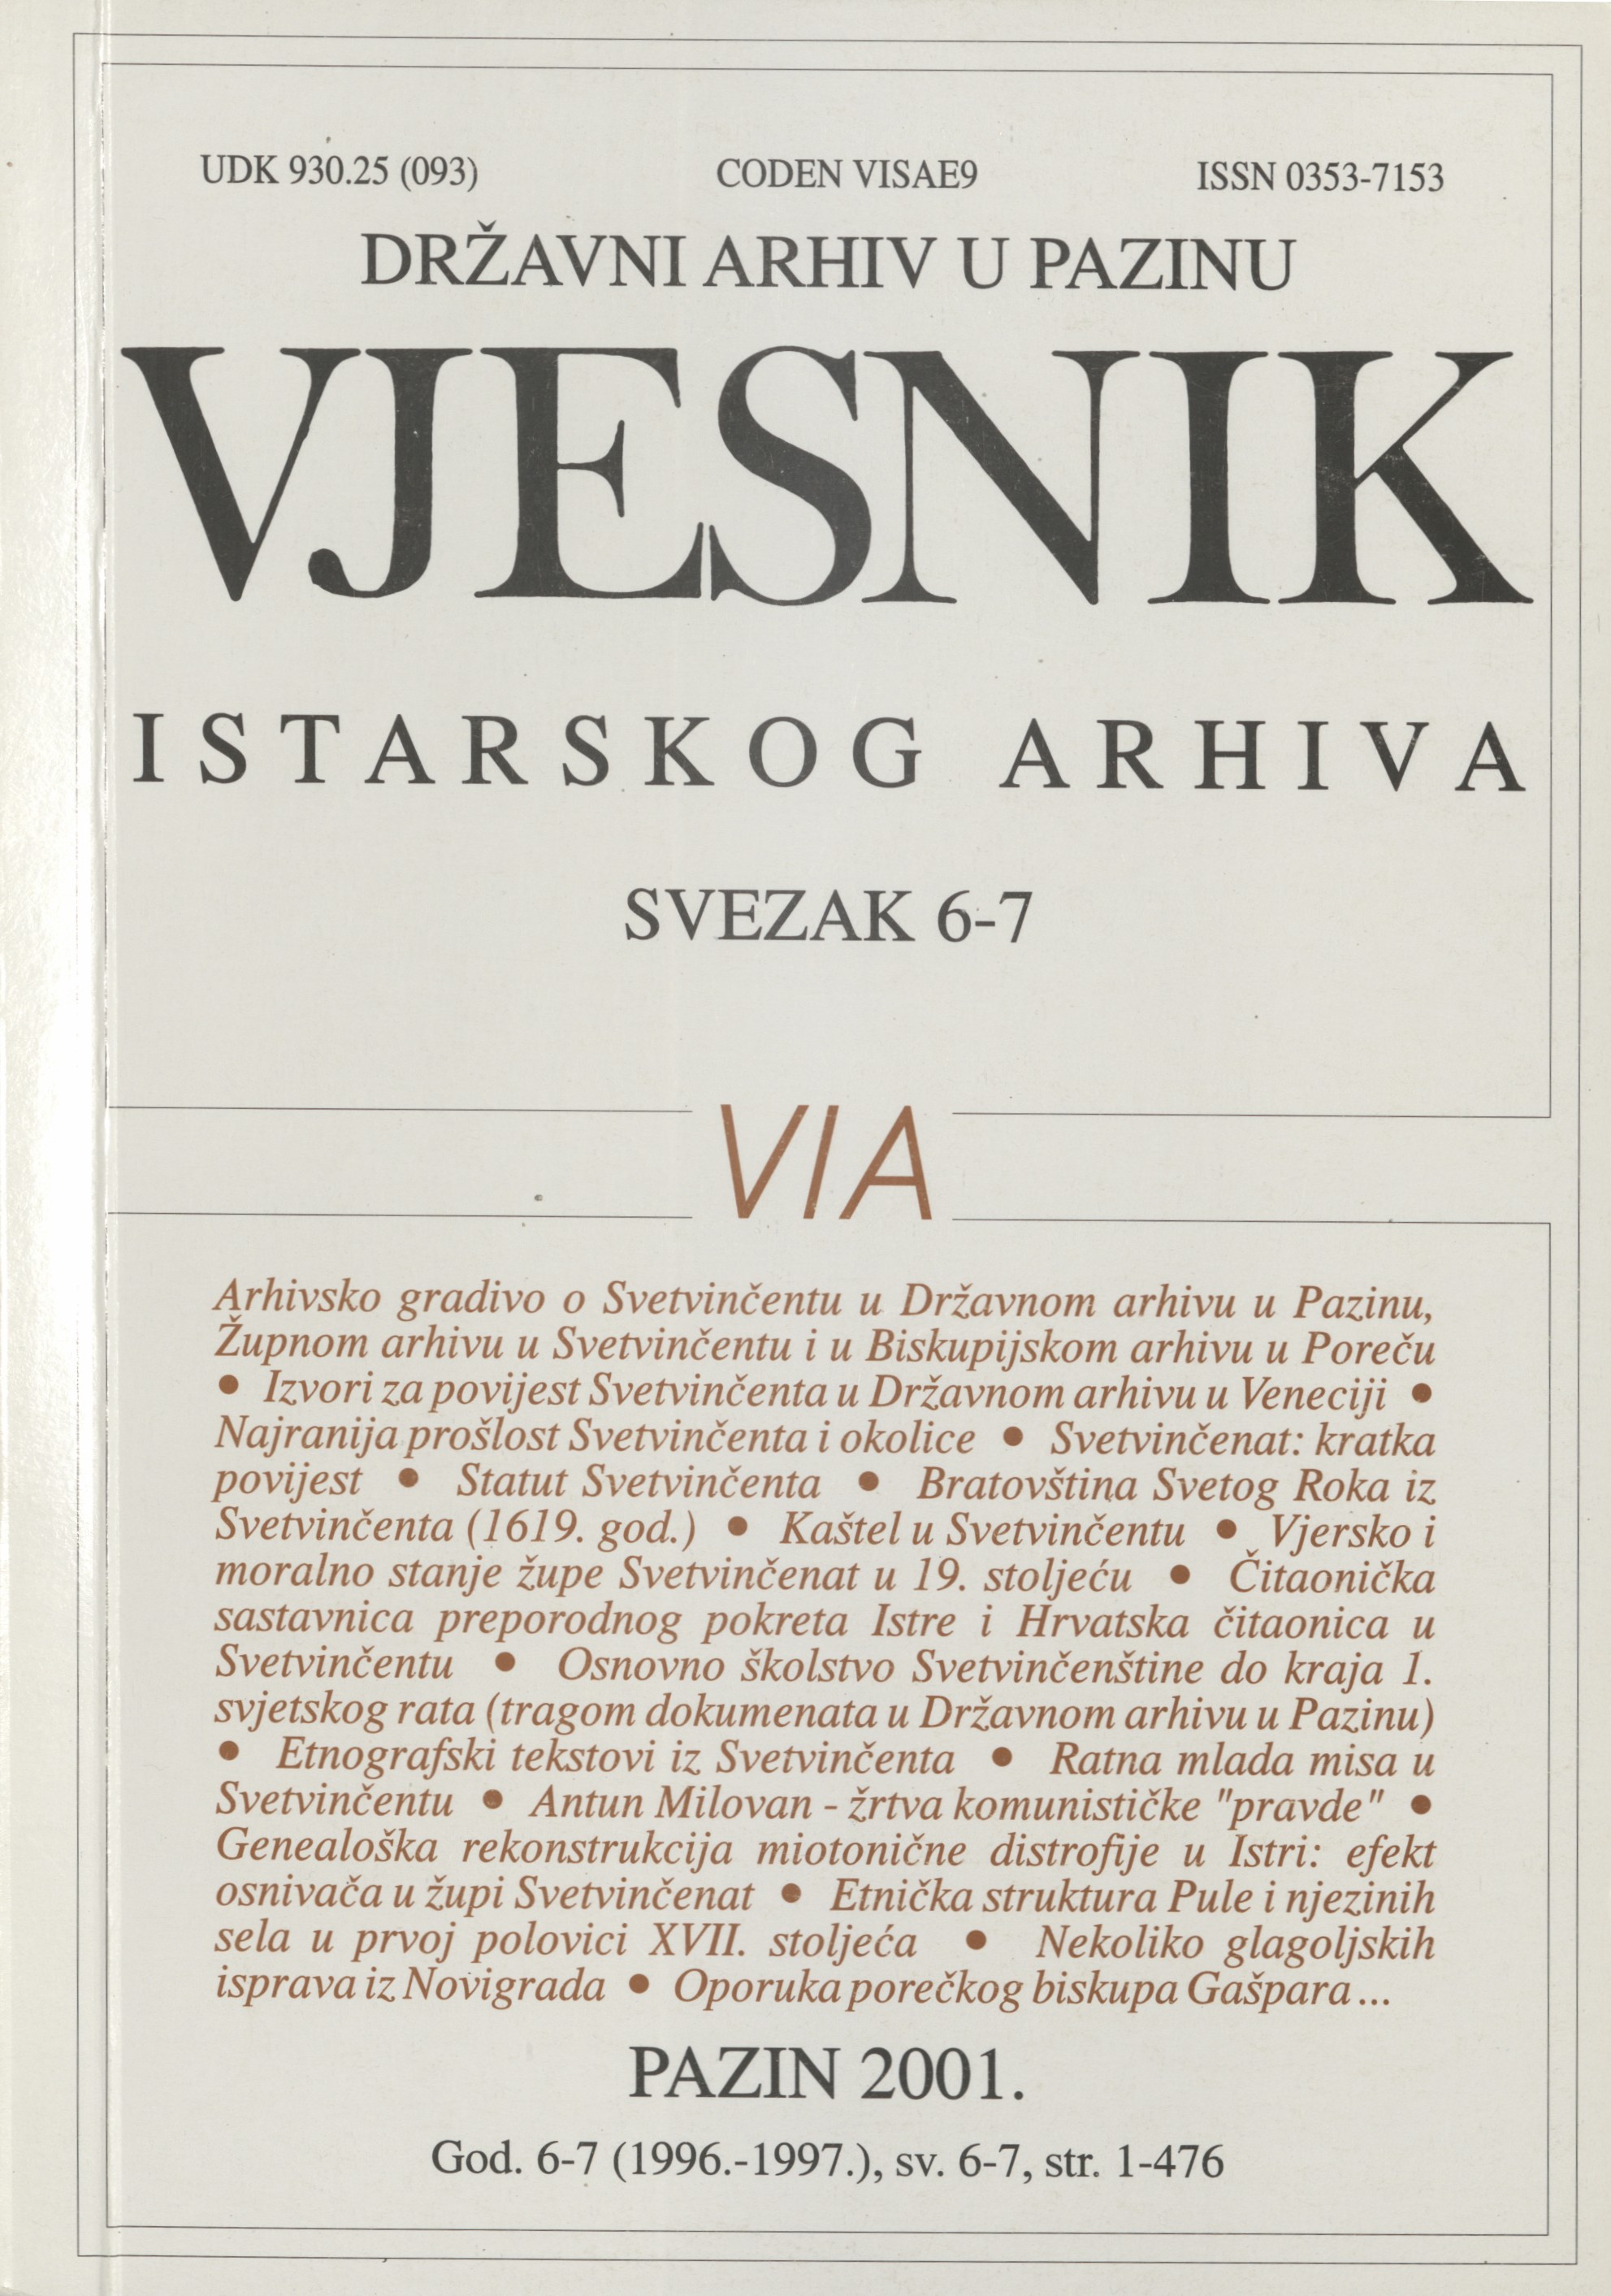 					View Vjesnik istarskog arhiva vol. 6-7 (1996-1997)
				